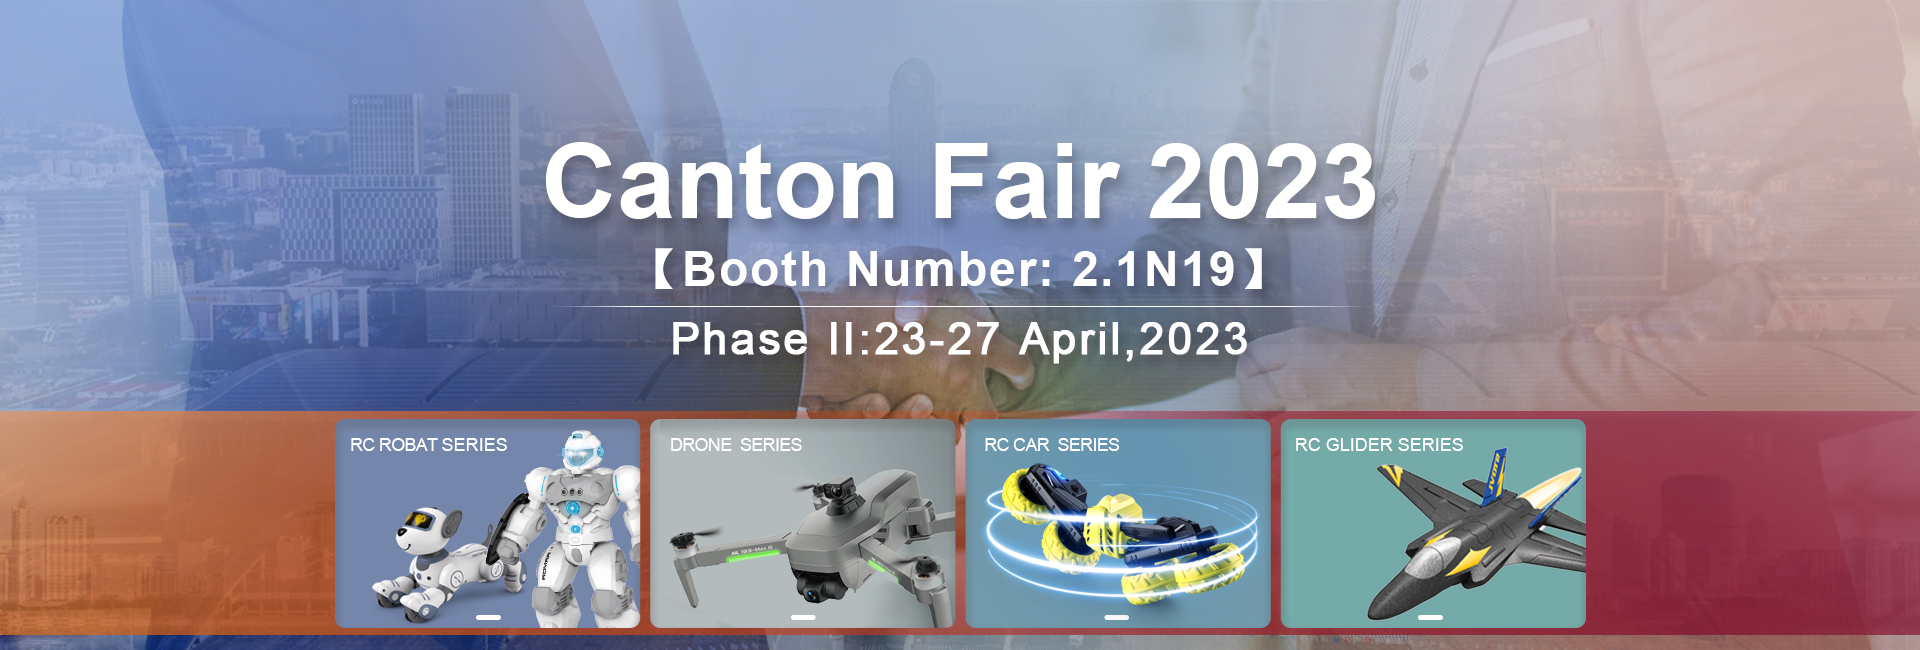 Xinfeitoys o Drone & RC Meataalo-Canton Fair 2023